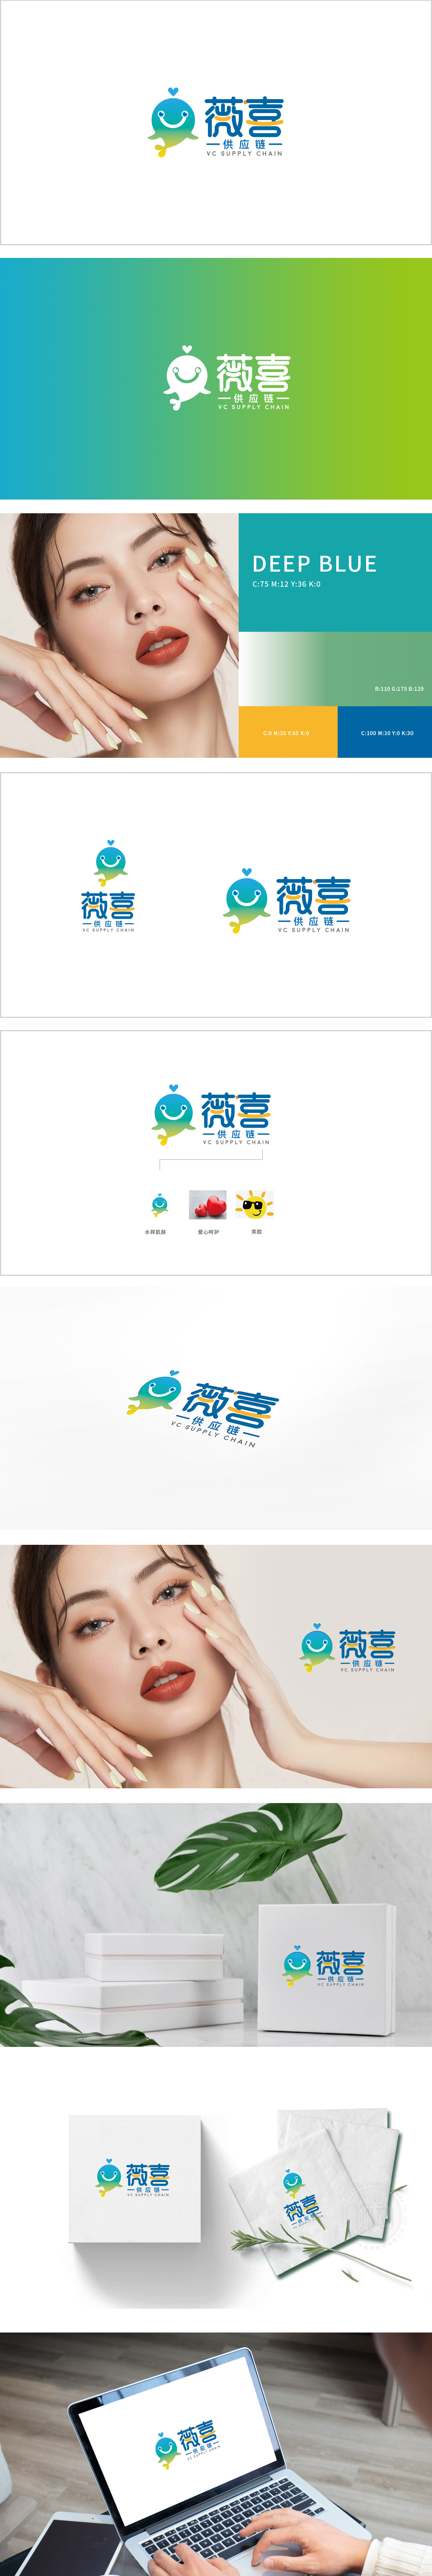 薇喜供应链互联网线上平台 吉祥物设计